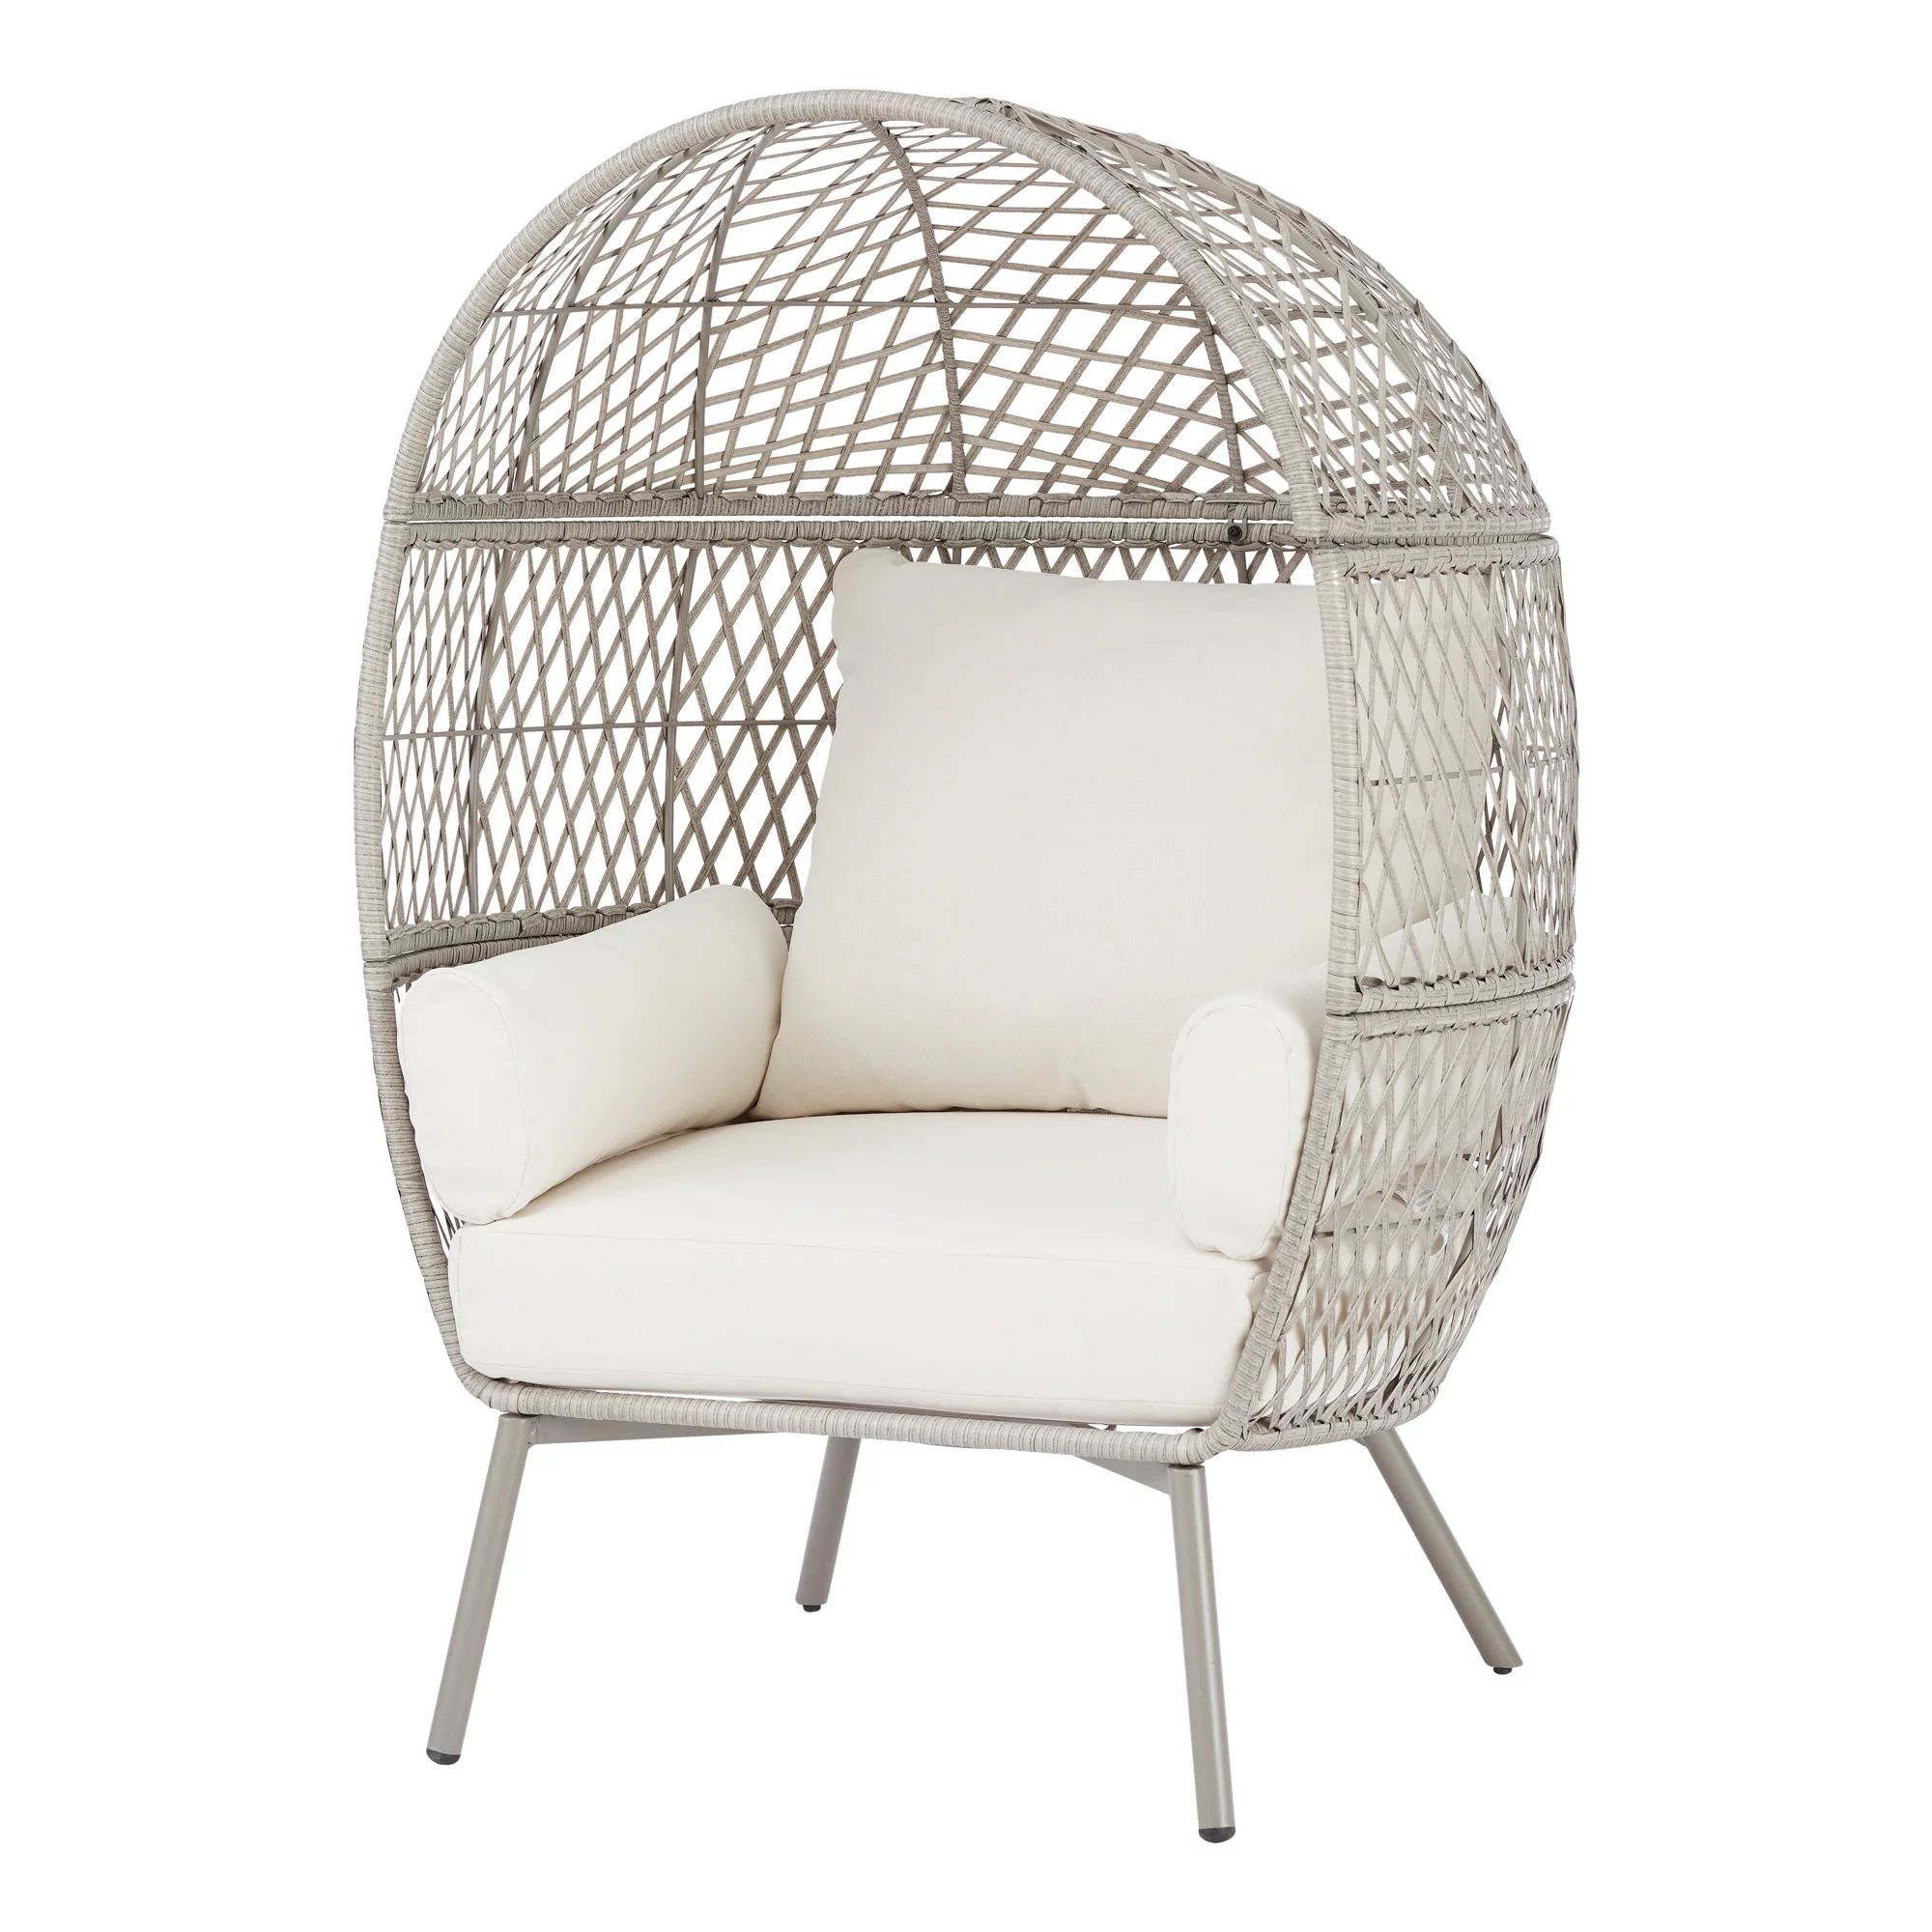 Better Homes & Gardens Ventura Weather Resistant Wicker Outdoor Egg Chair - Cream | Walmart (US)